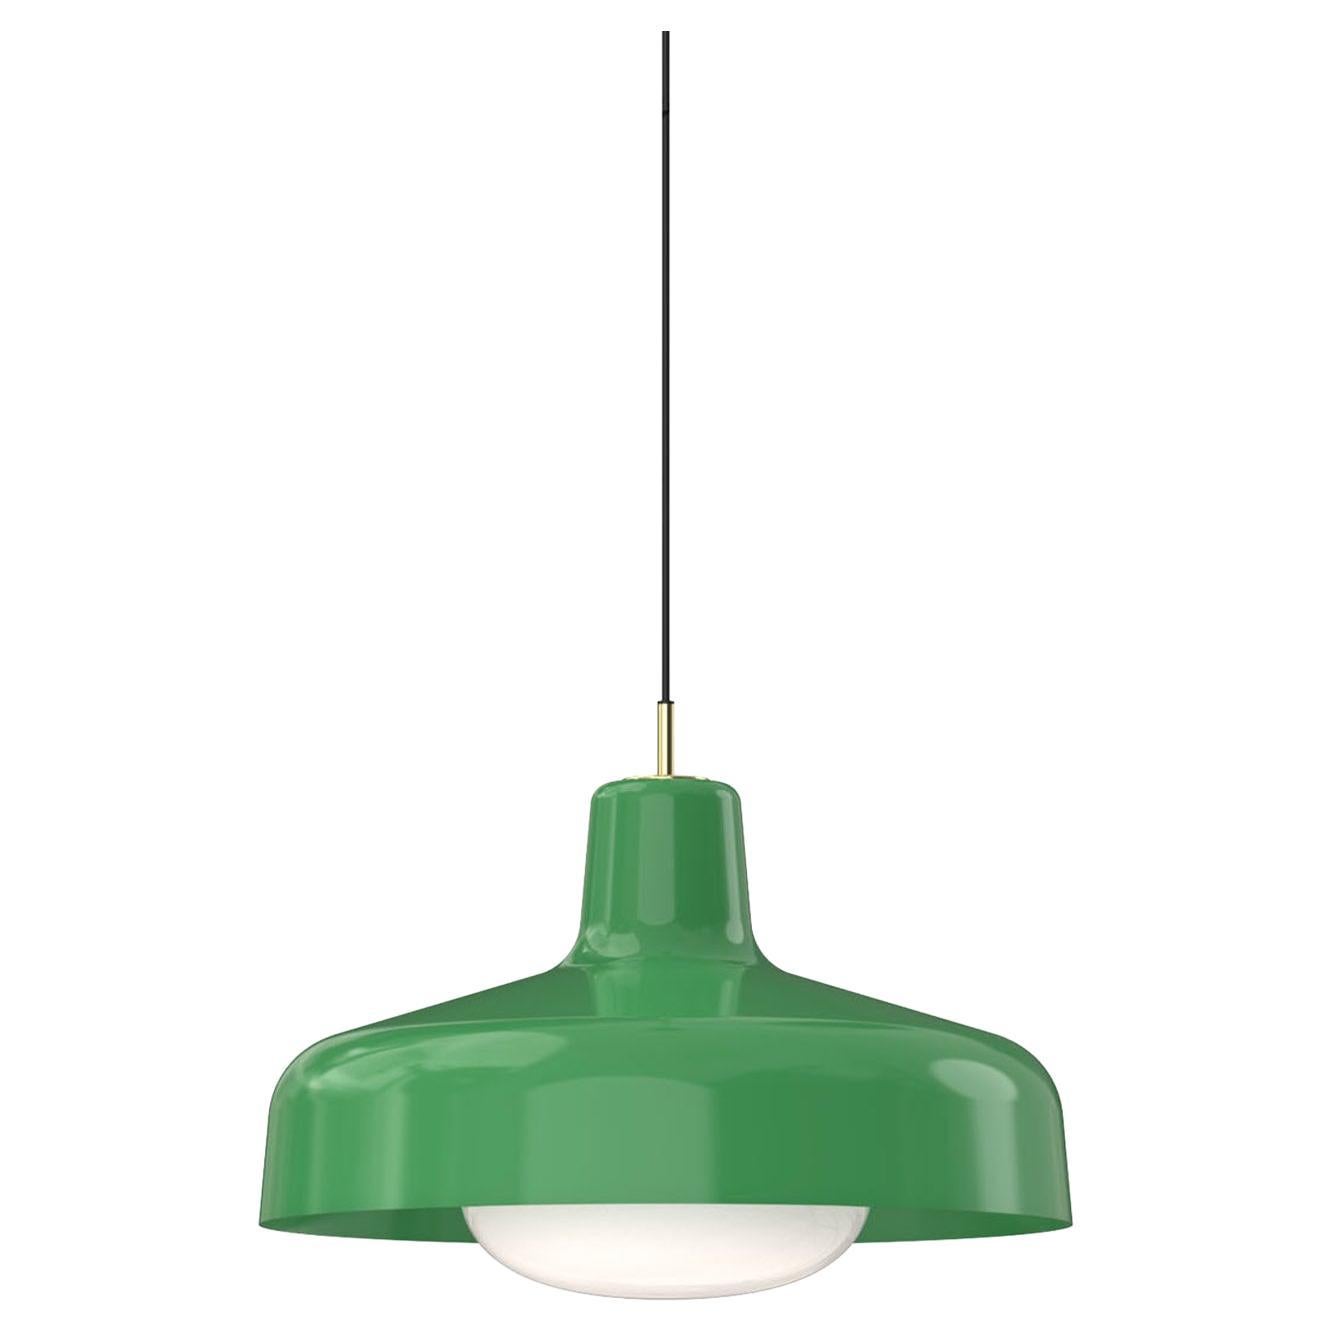 Paolina Green Pendant Lamp By Ignazio gardella For Sale